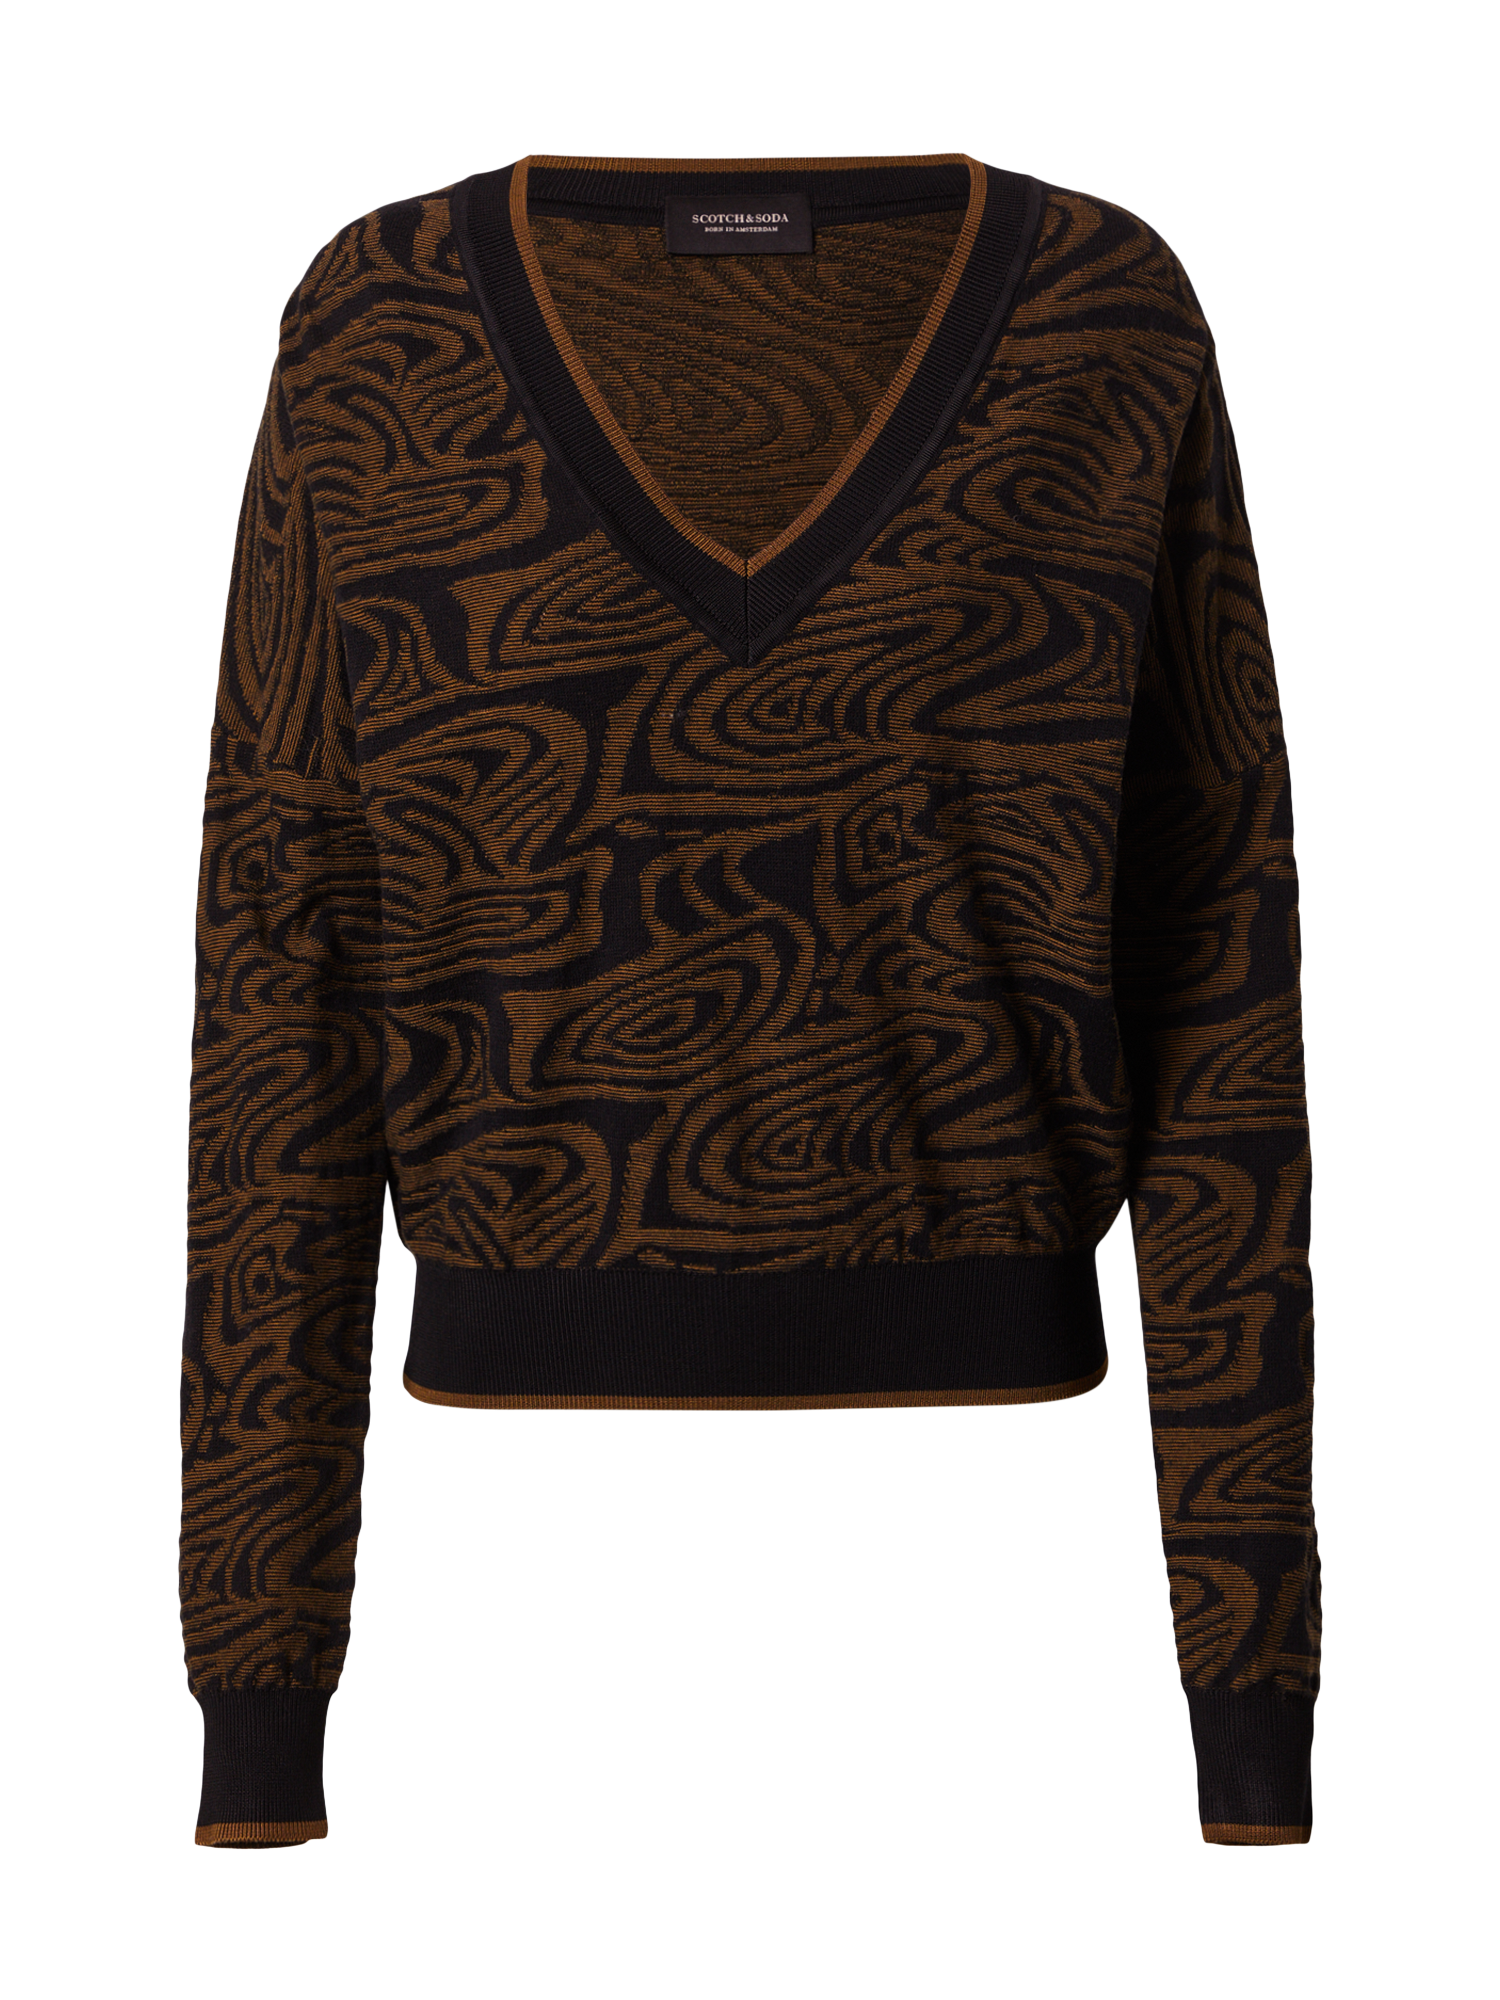 WSCOr Swetry & dzianina SCOTCH & SODA Sweter w kolorze Brązowy, Czarnym 